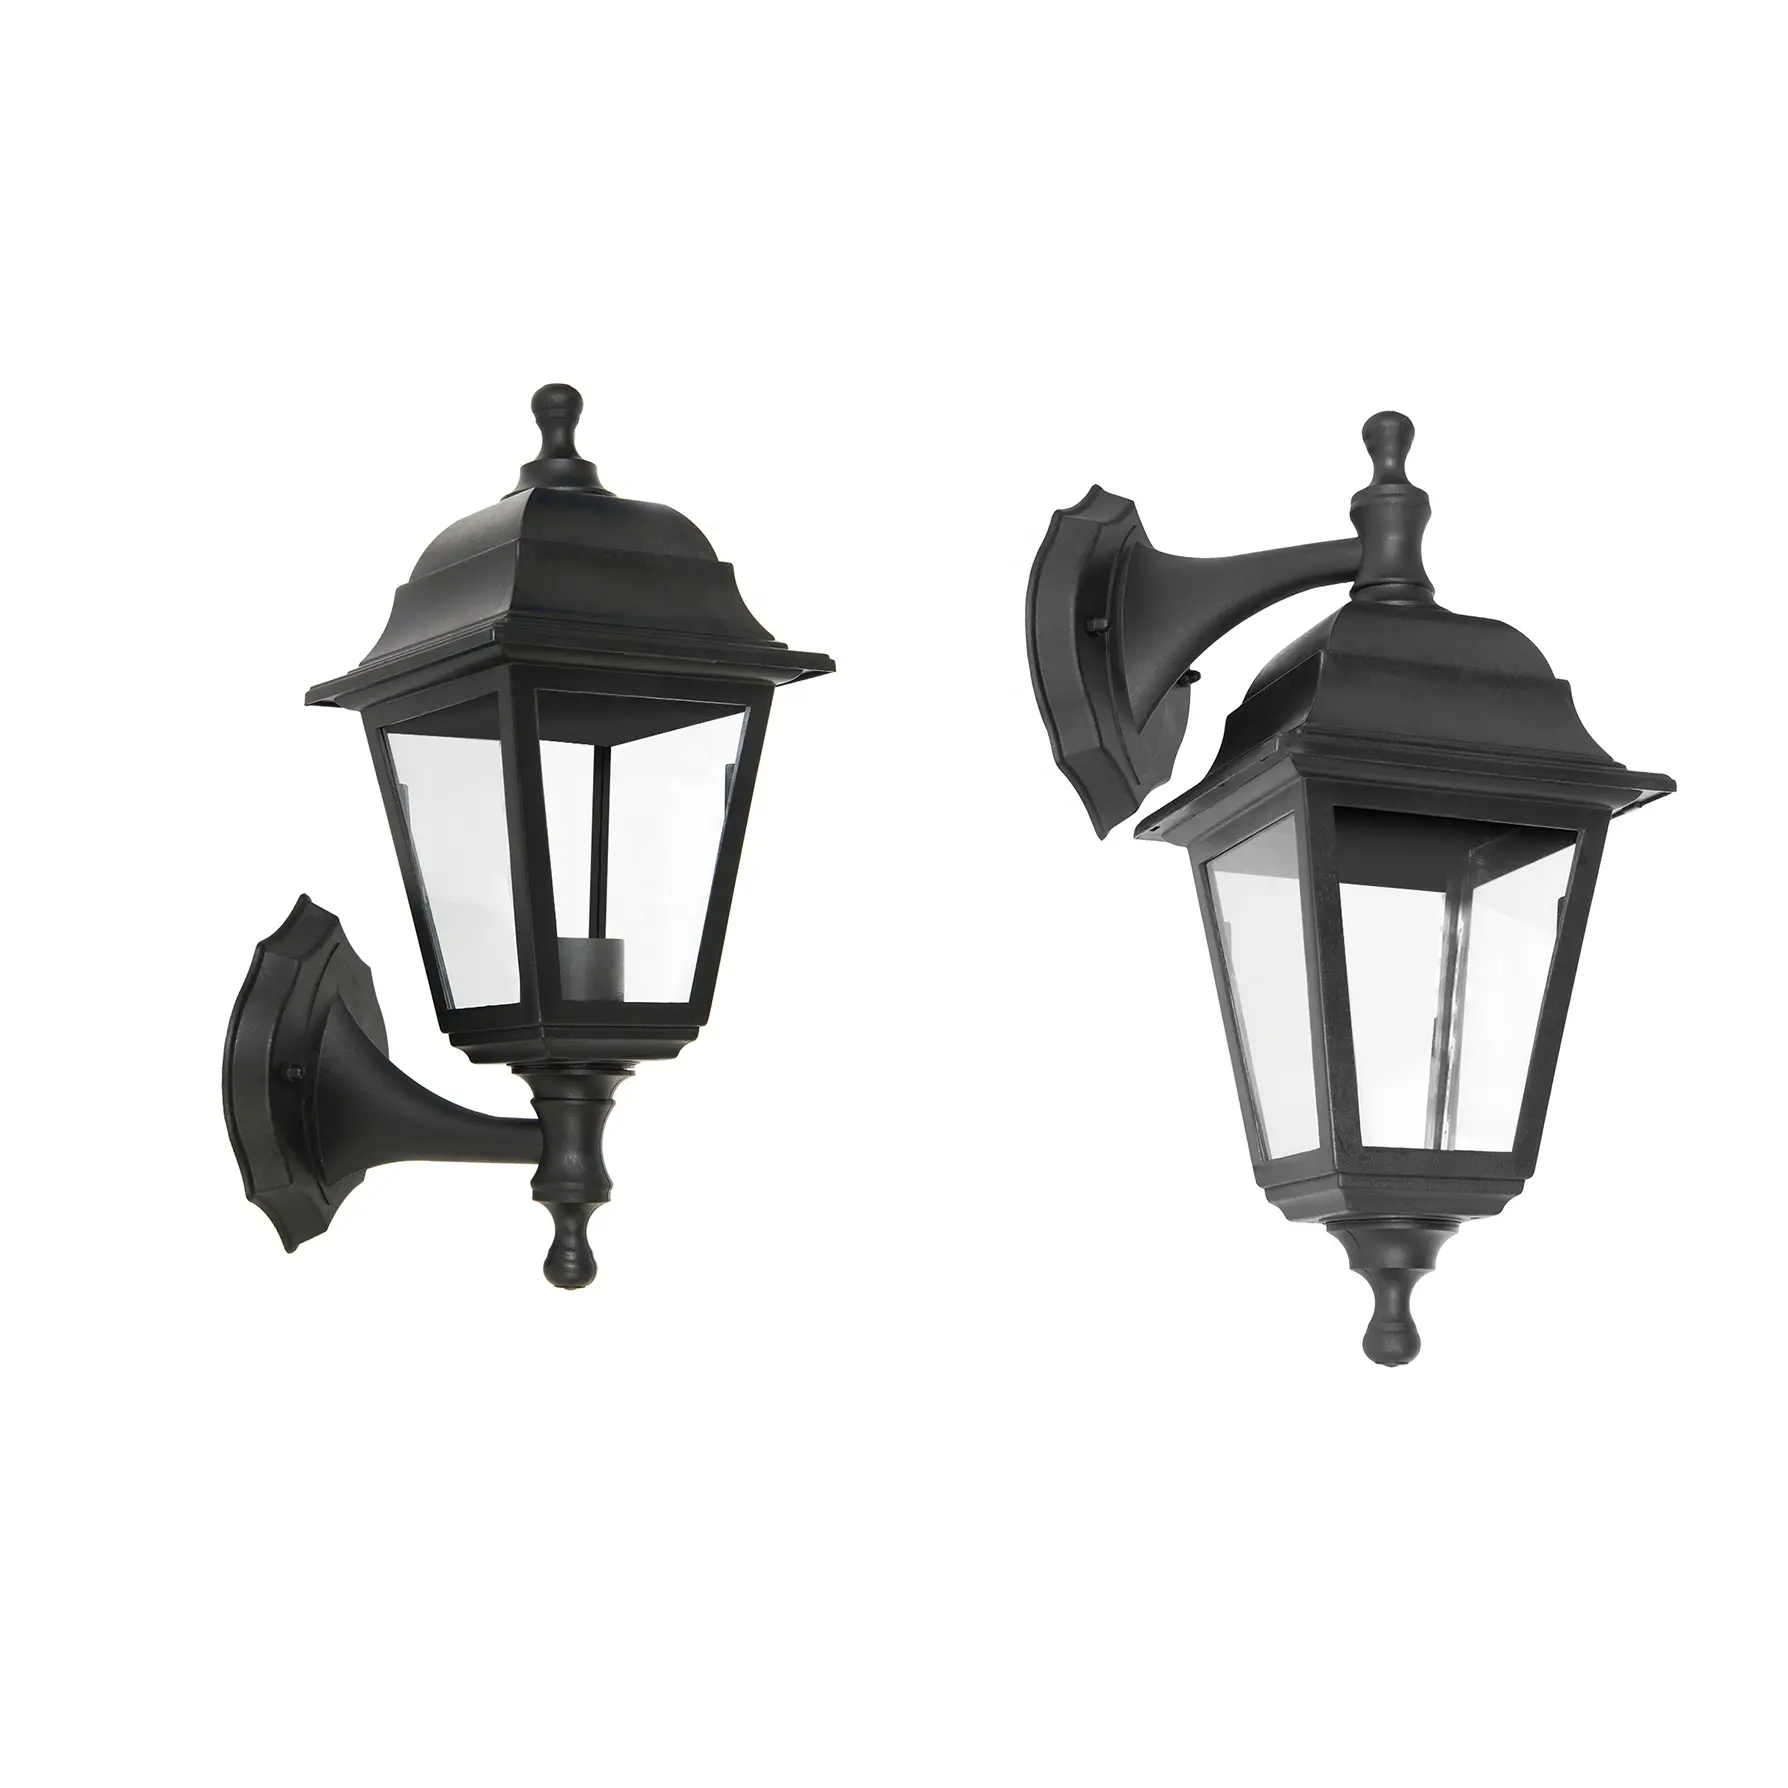 P401дешевый классический настенный светильник, Уличный настенный светильник, античный винтажный комнатный садовый настенный светильник